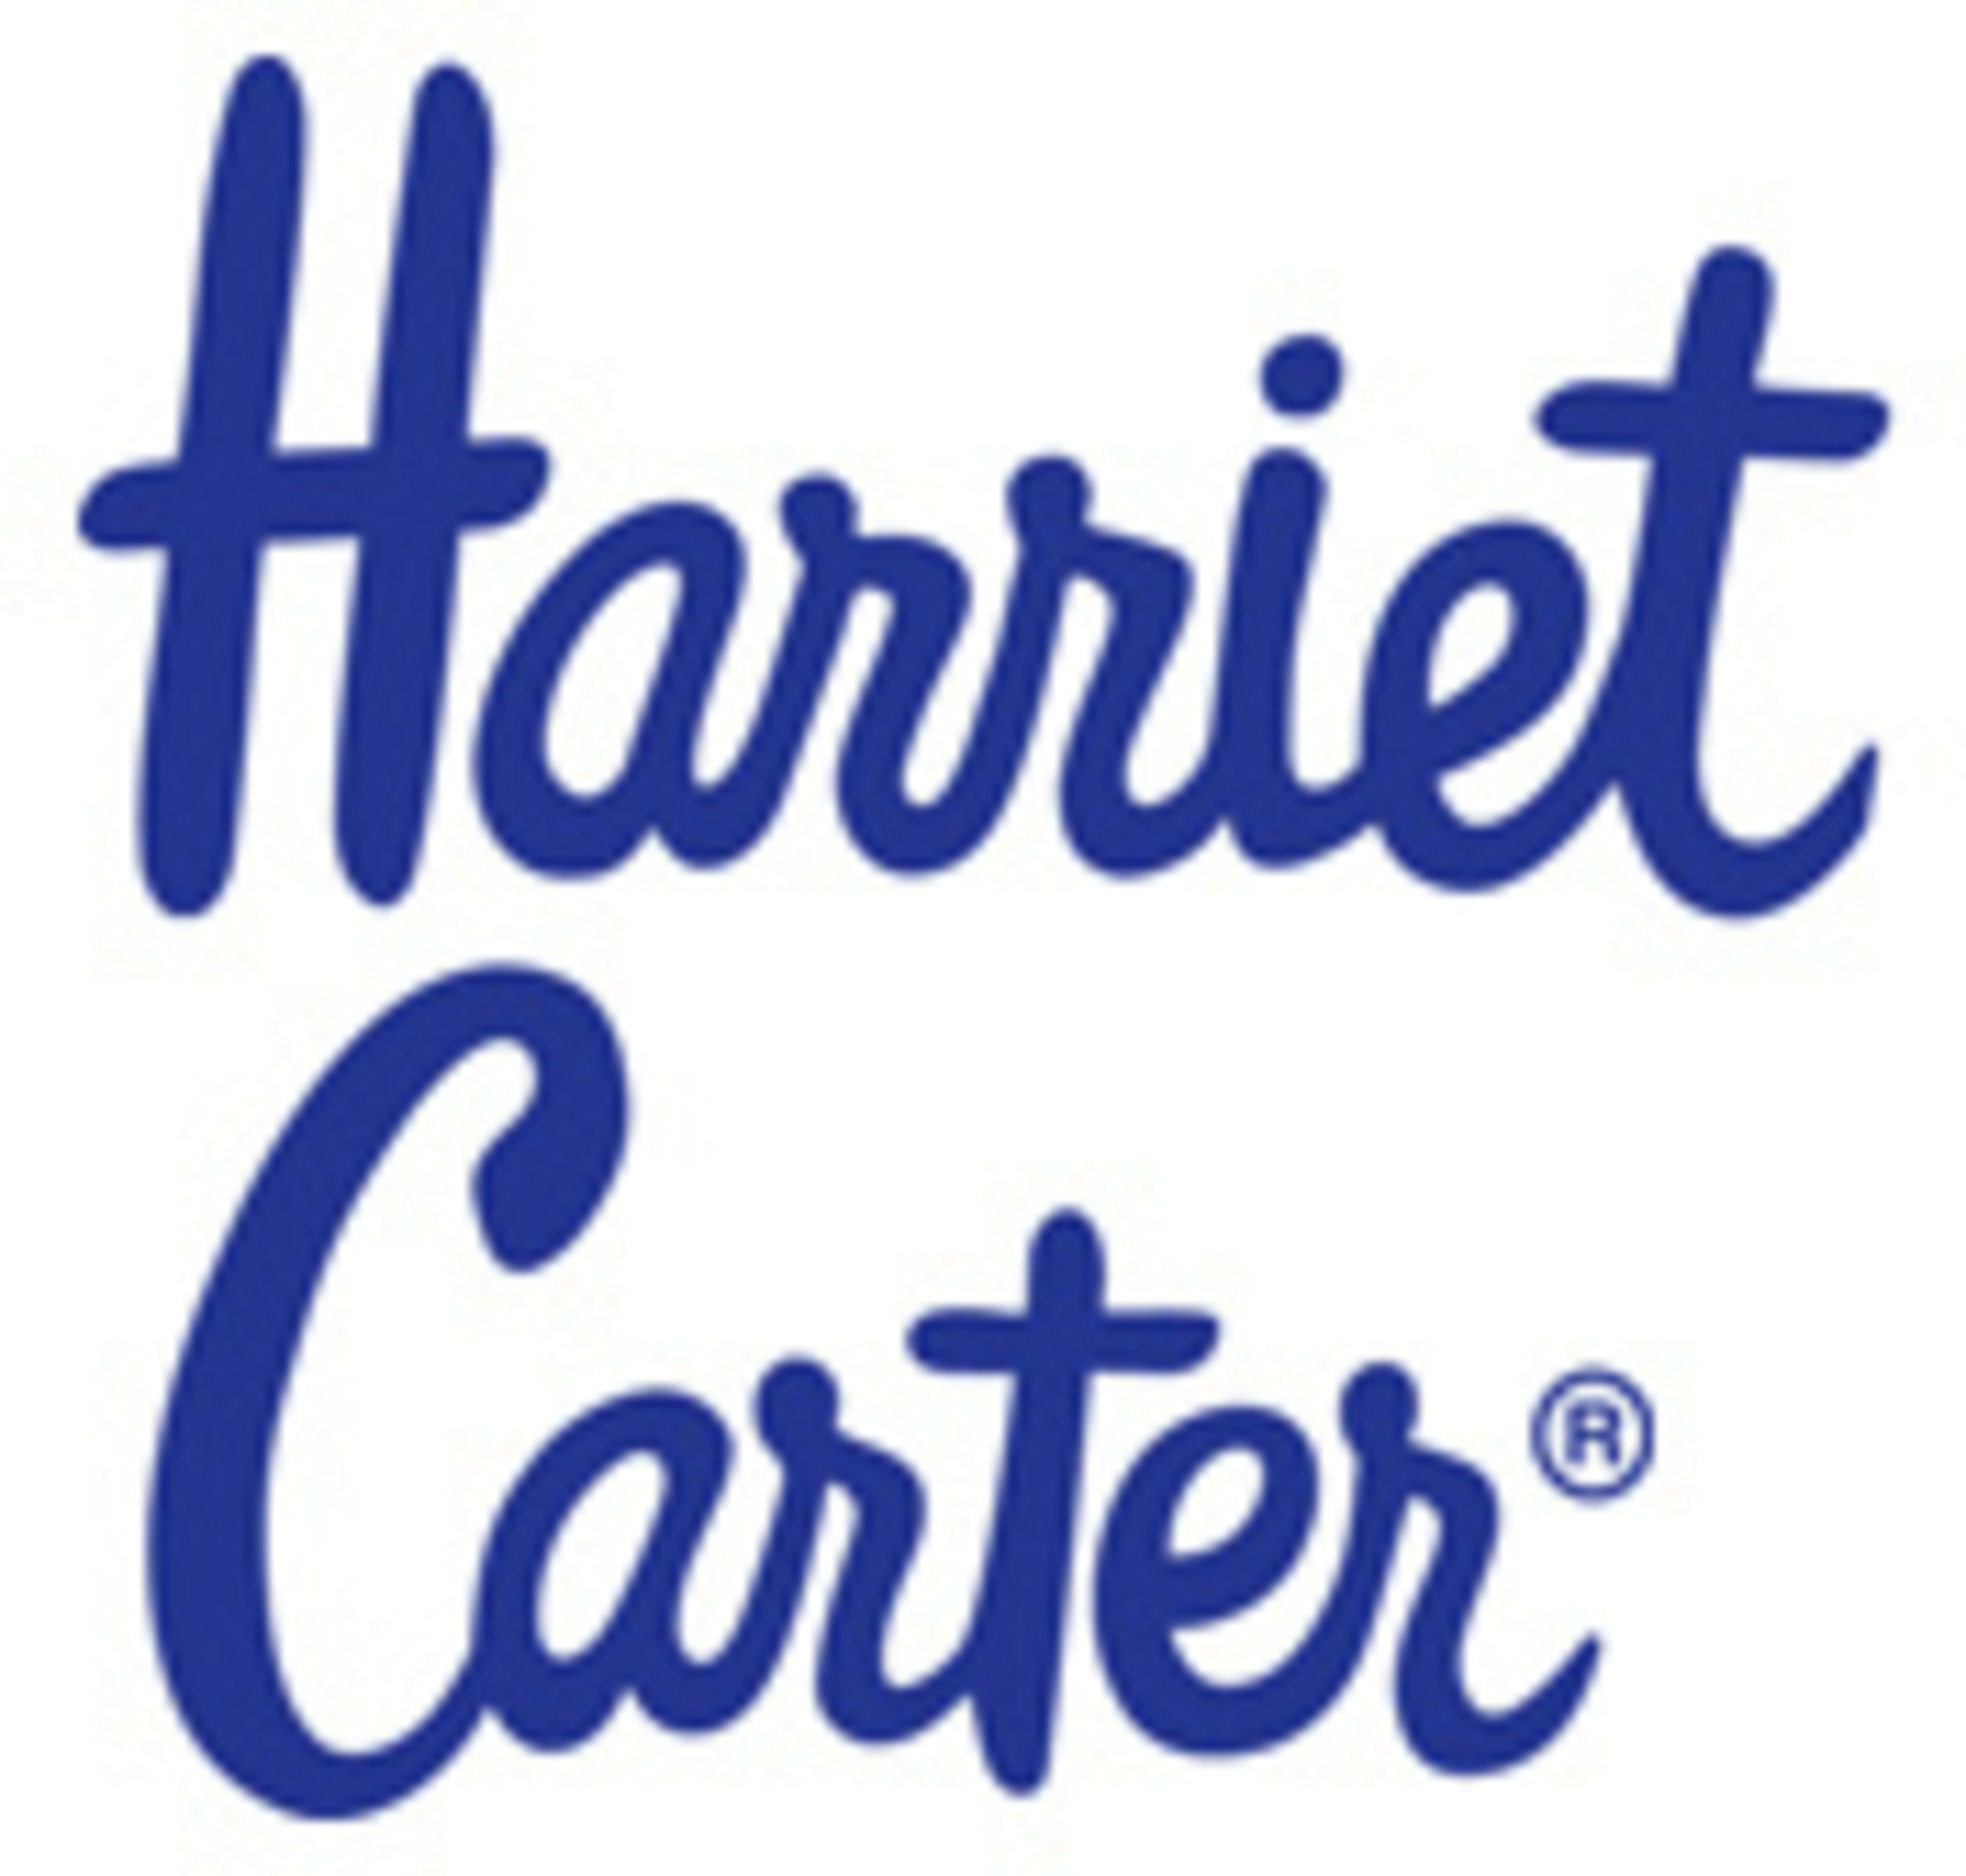 Harriet Carter Gifts Code